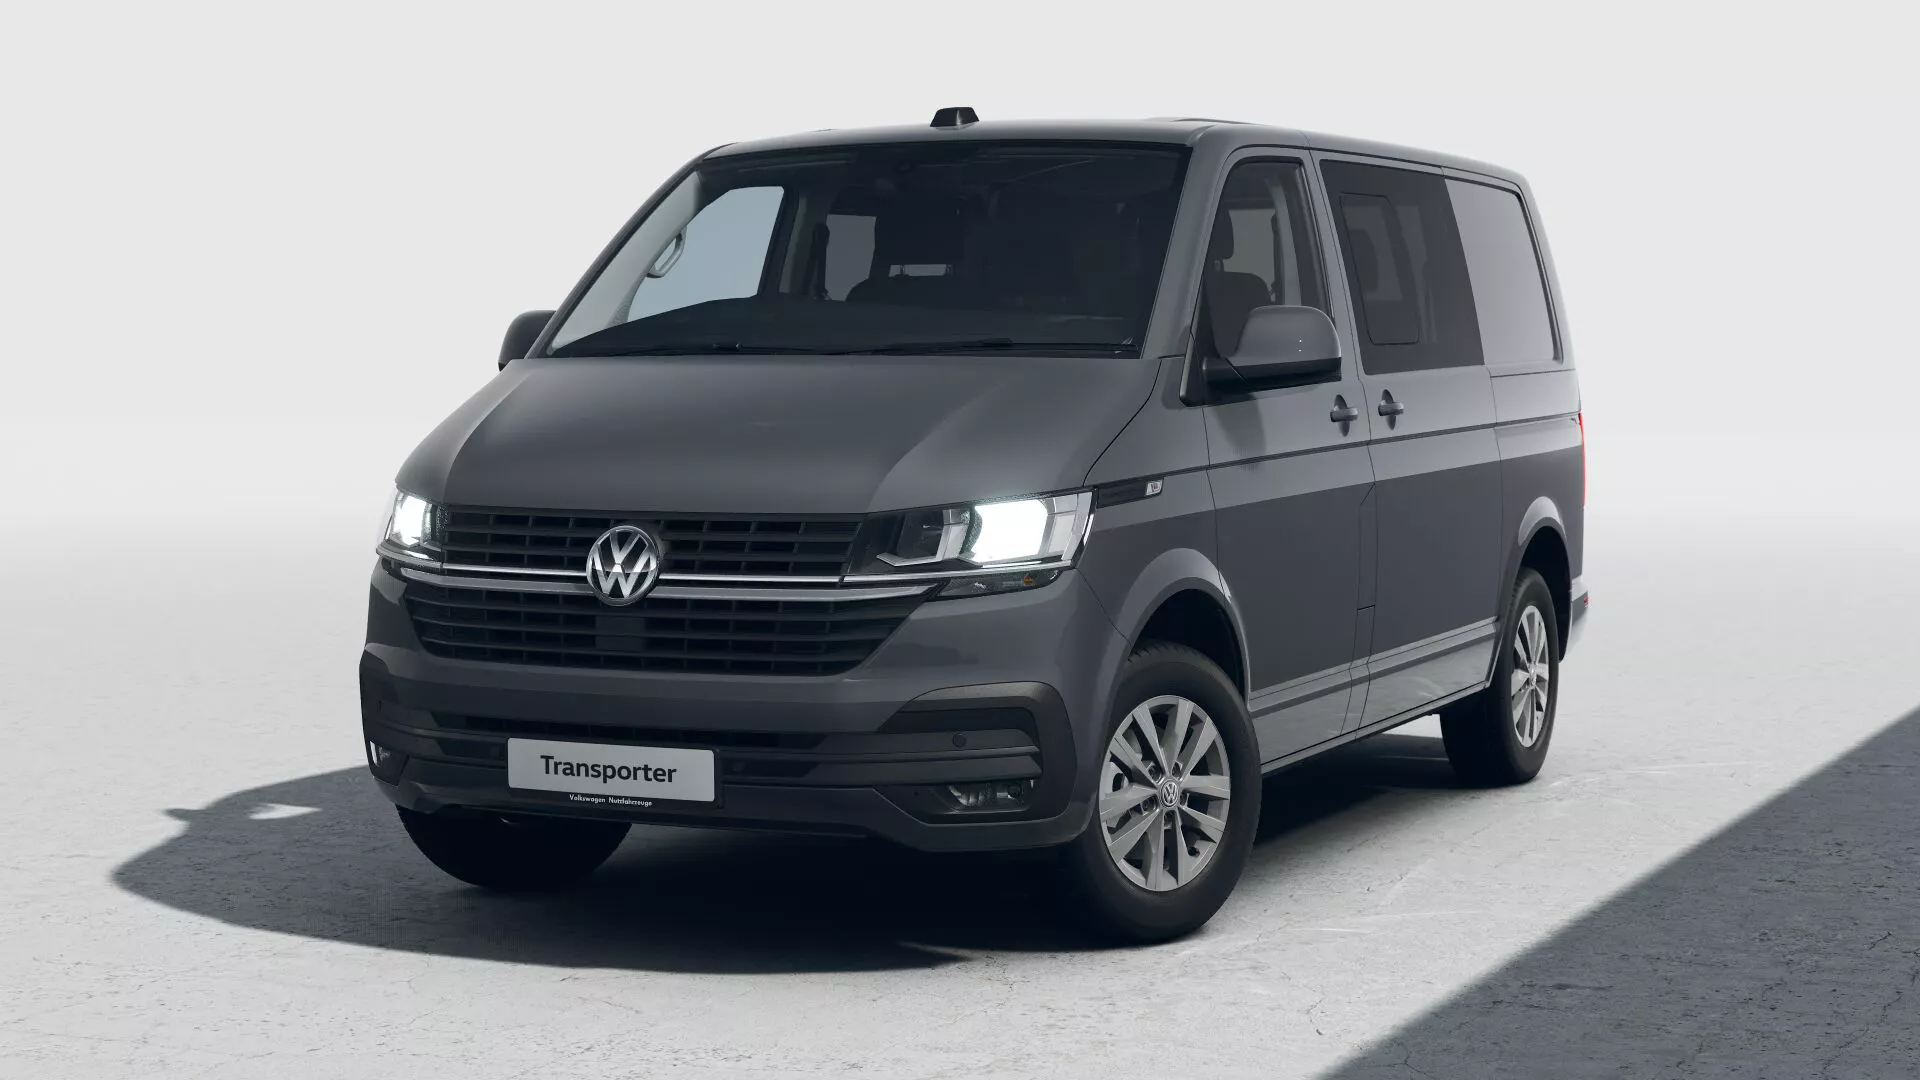 Volkswagen Transporter Van Review 2020